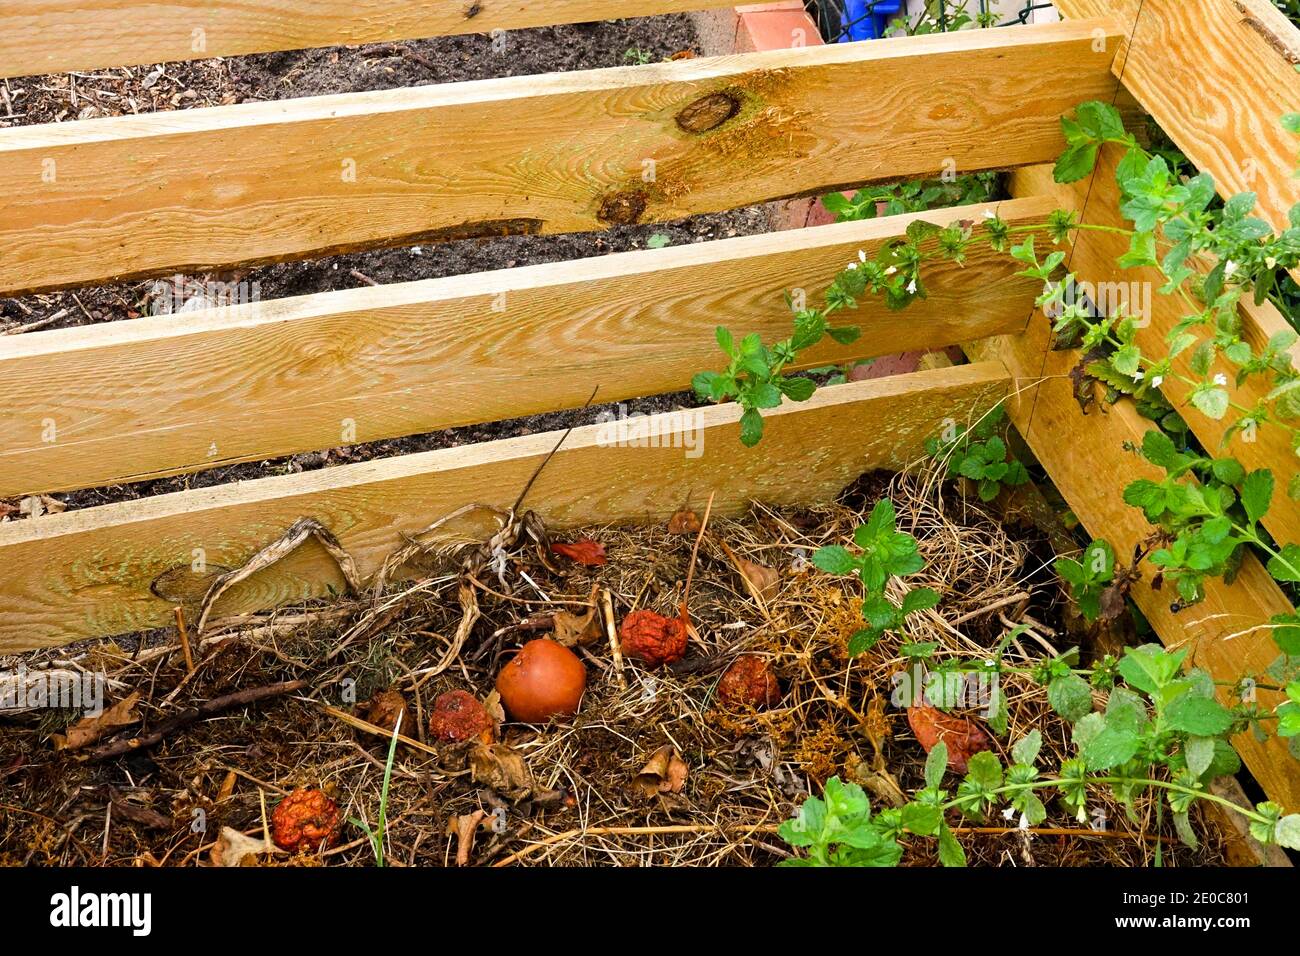 Wooden compost bin in an allotment garden Stock Photo